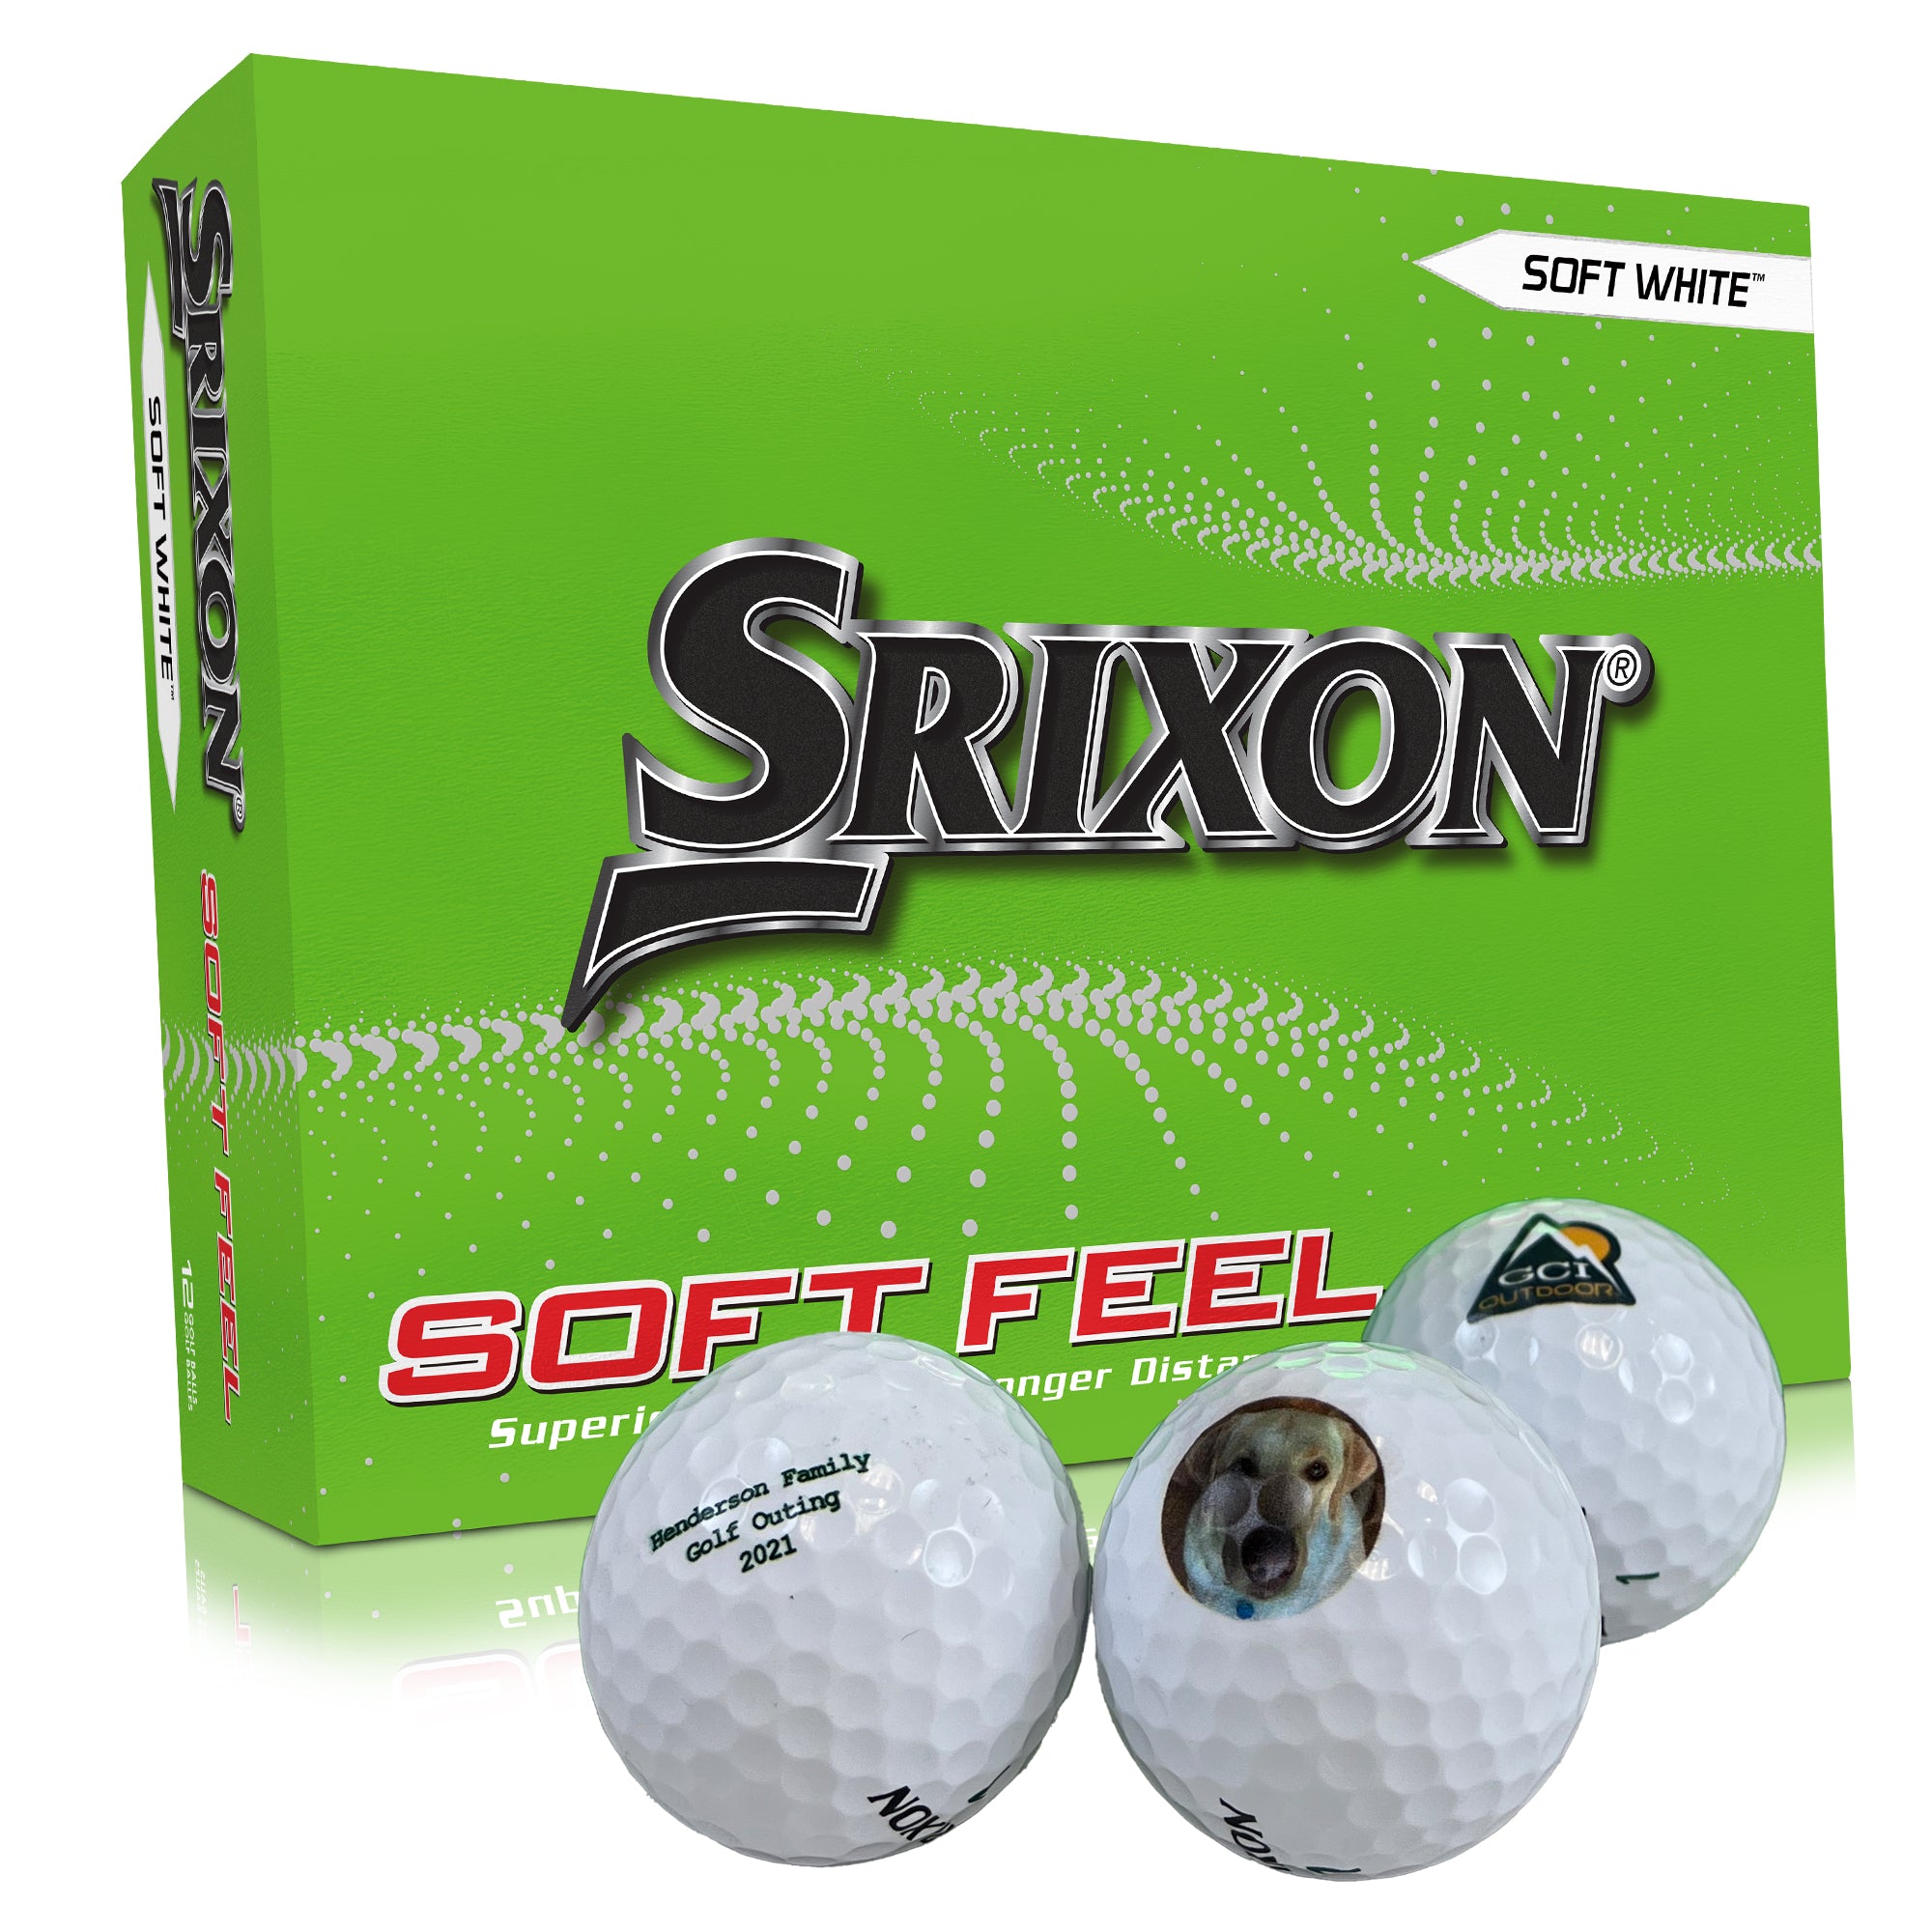 Srixon Soft Feel 12 - Custom Logo Imprint